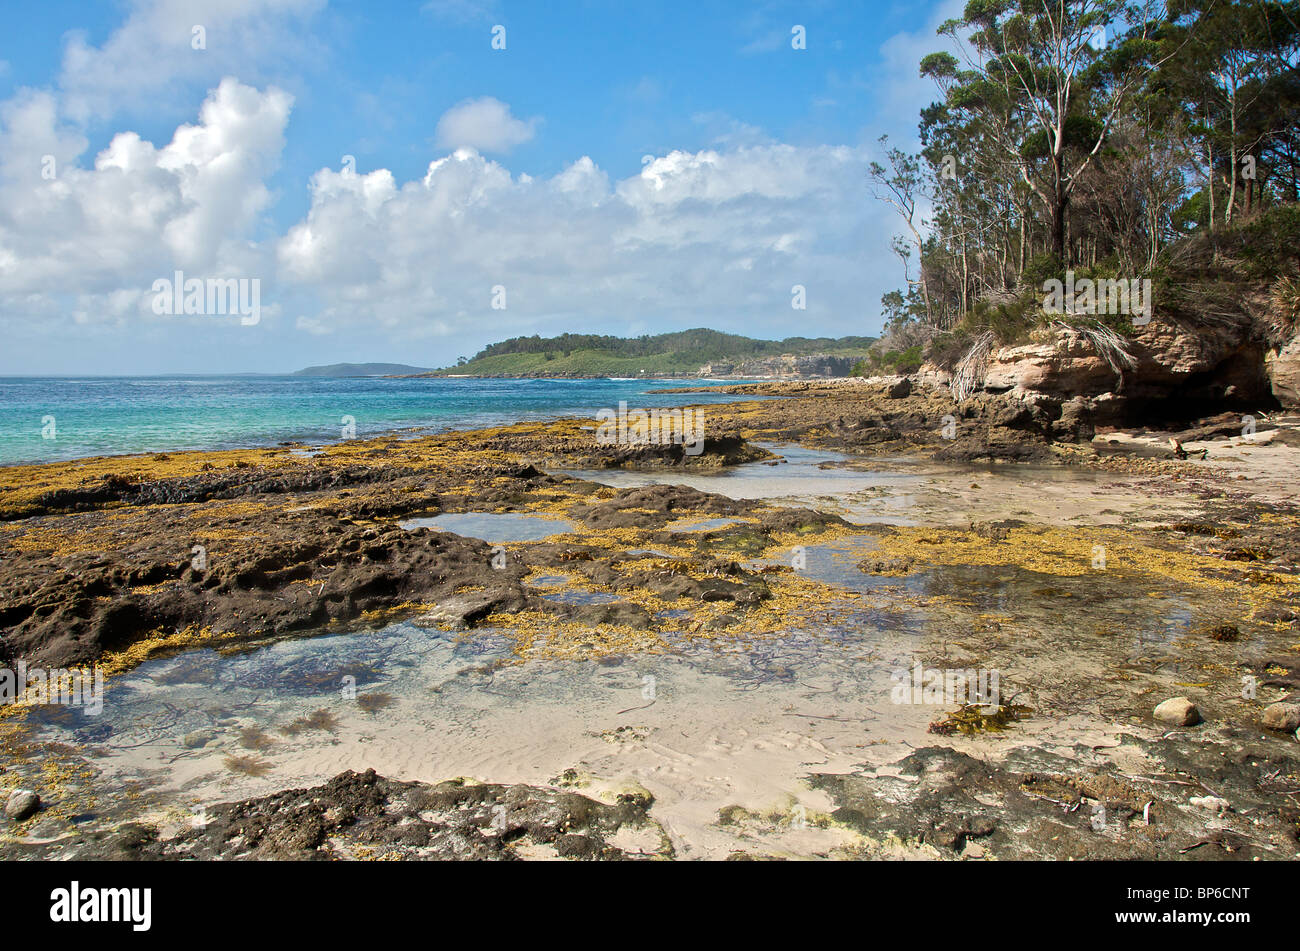 Piscine di roccia Murray's Beach Booderee National Park Jervis Bay NSW Australia Foto Stock